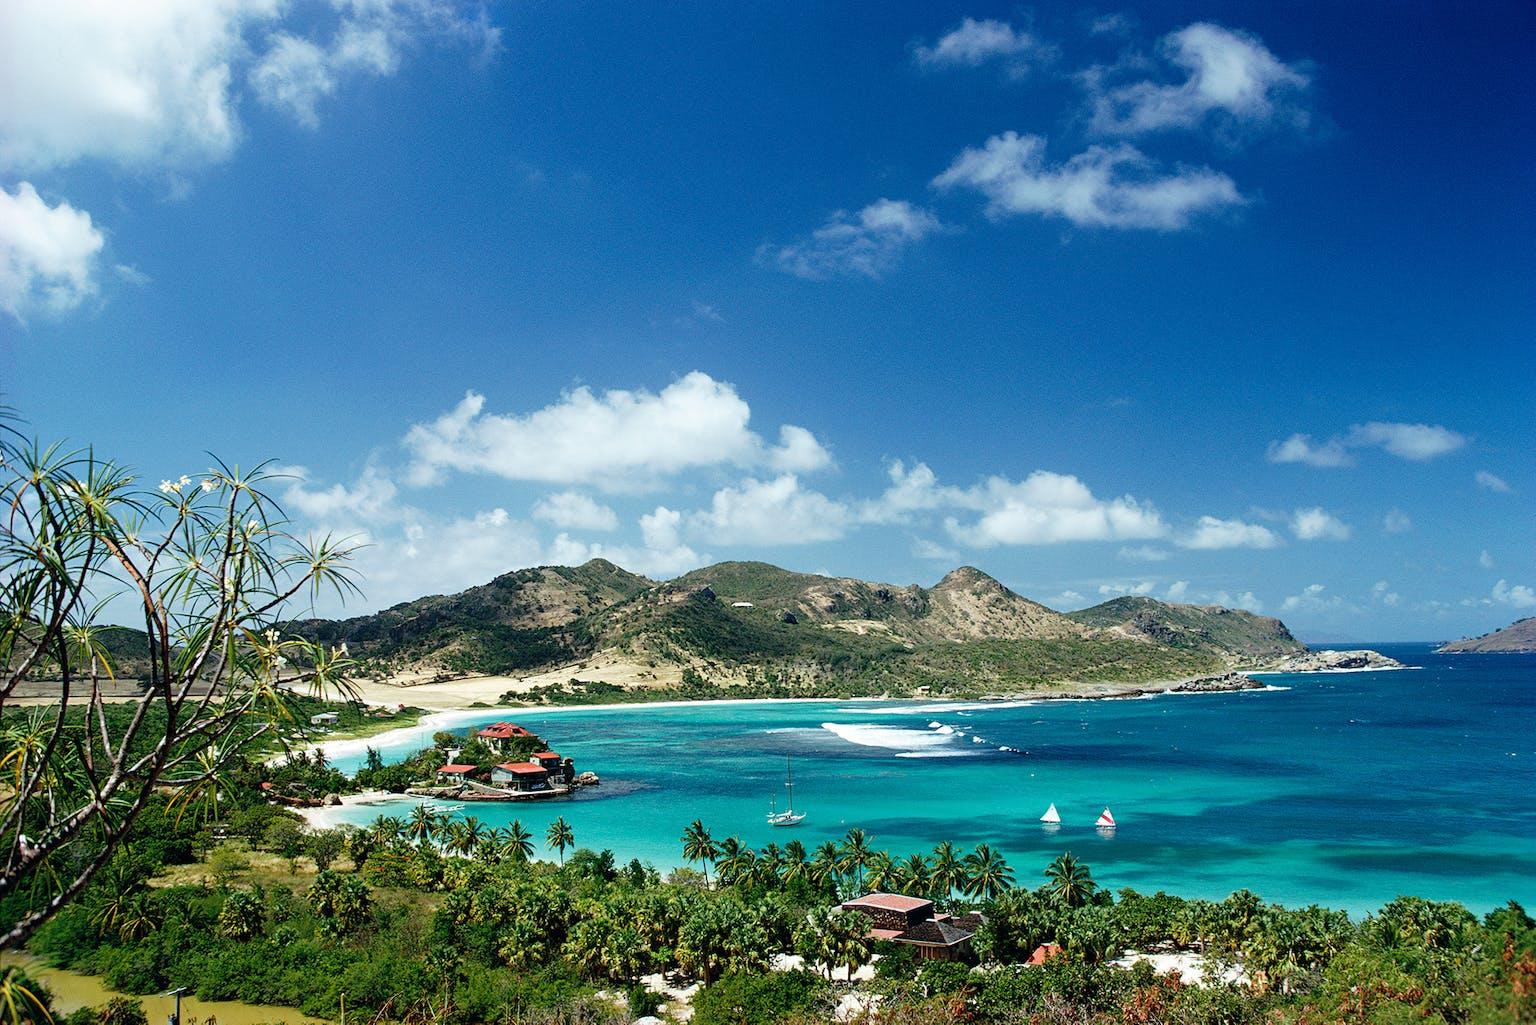 Slim Aarons Landscape Photograph – Eden Rock, Nachlassausgabe, Bucht von St. Jean in der Karibikinsel St. Barts